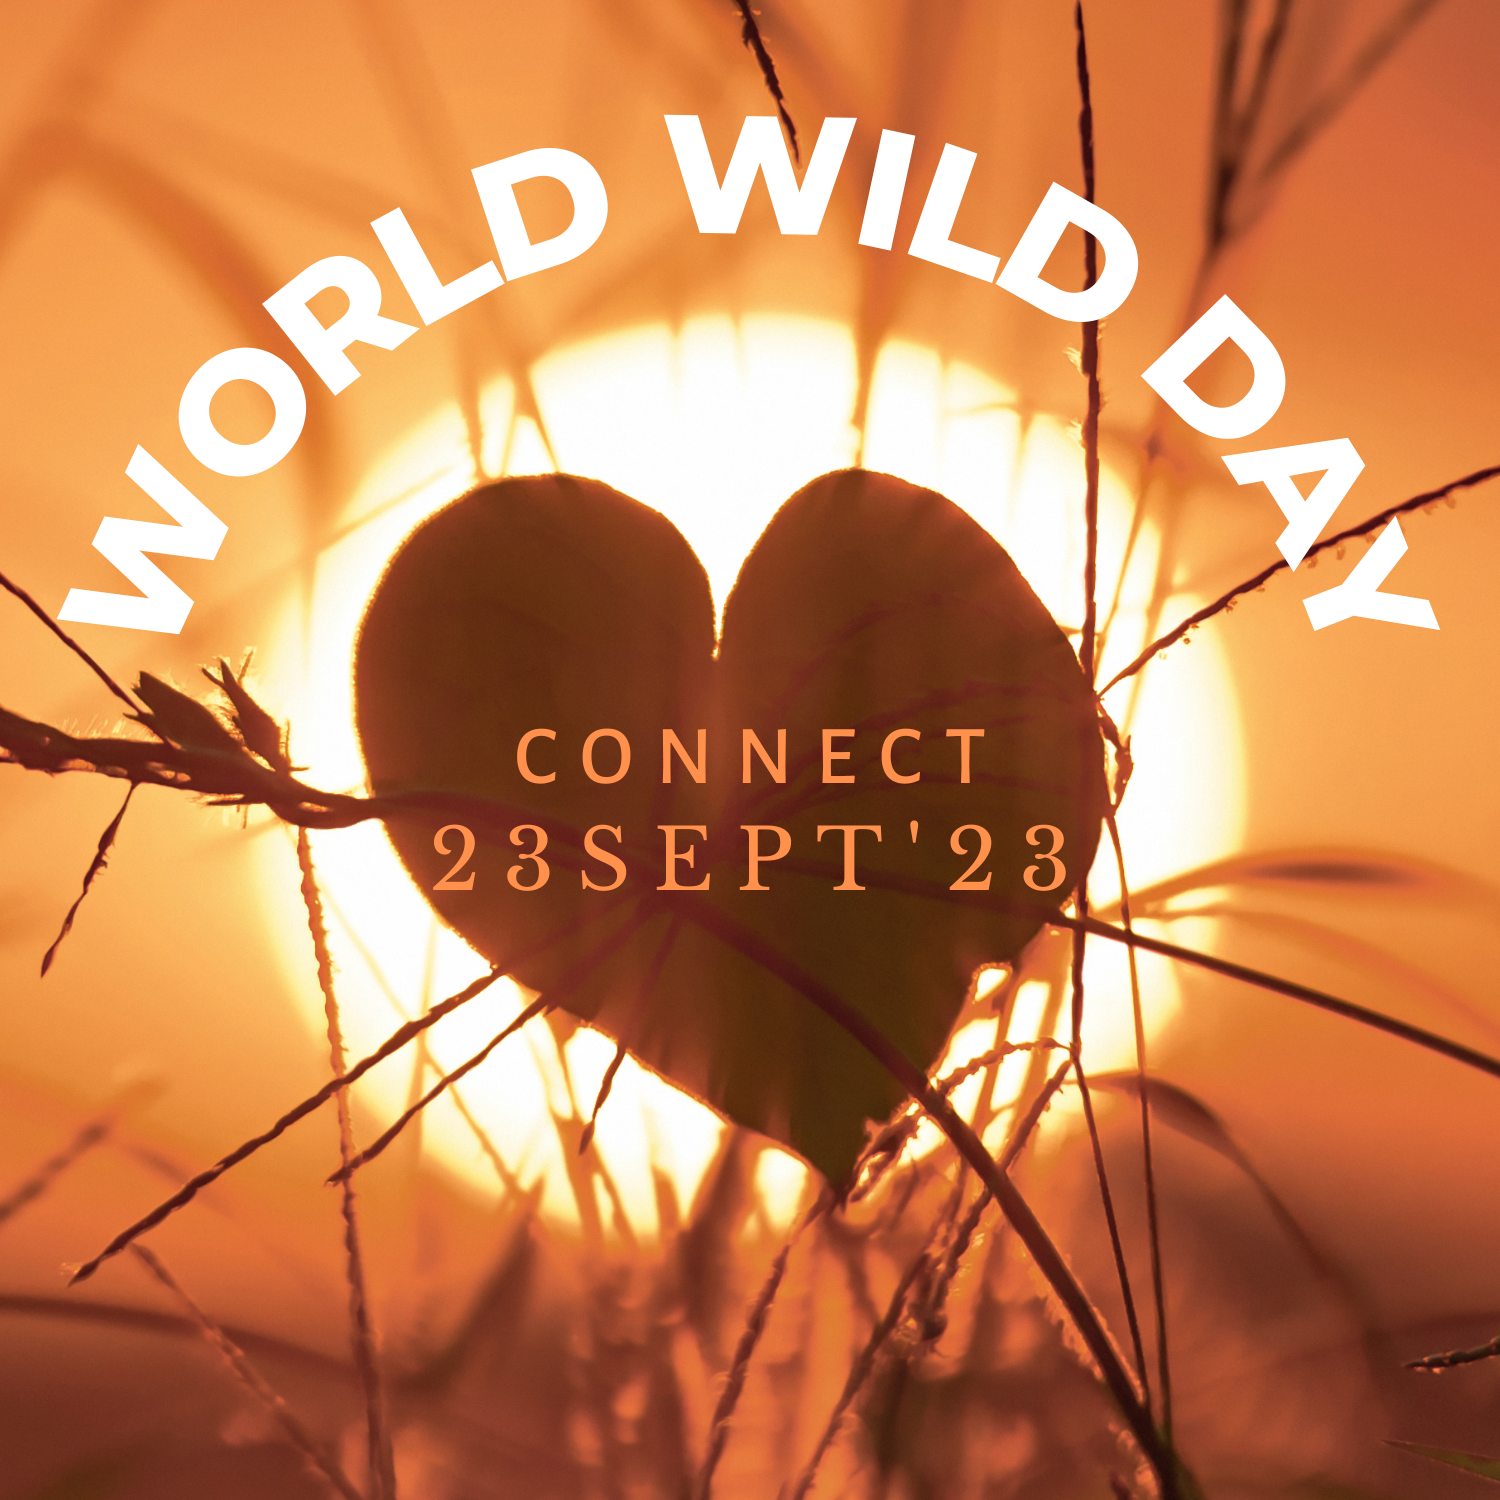 World Wild Day